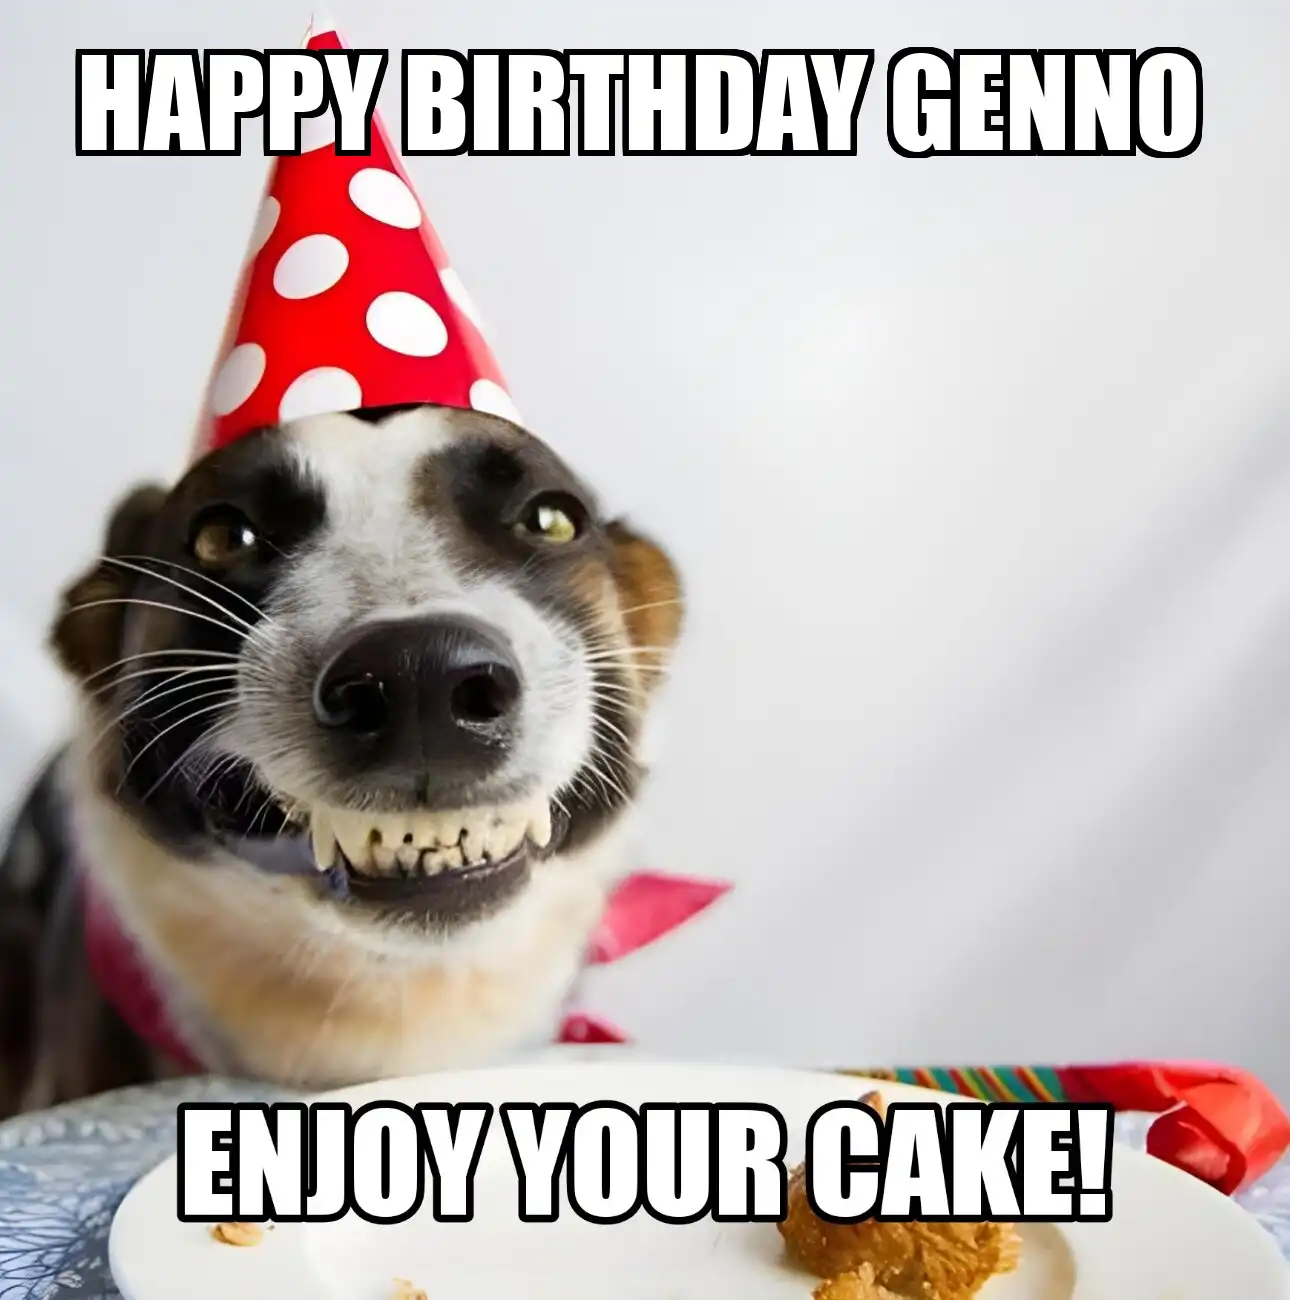 Happy Birthday Genno Enjoy Your Cake Dog Meme